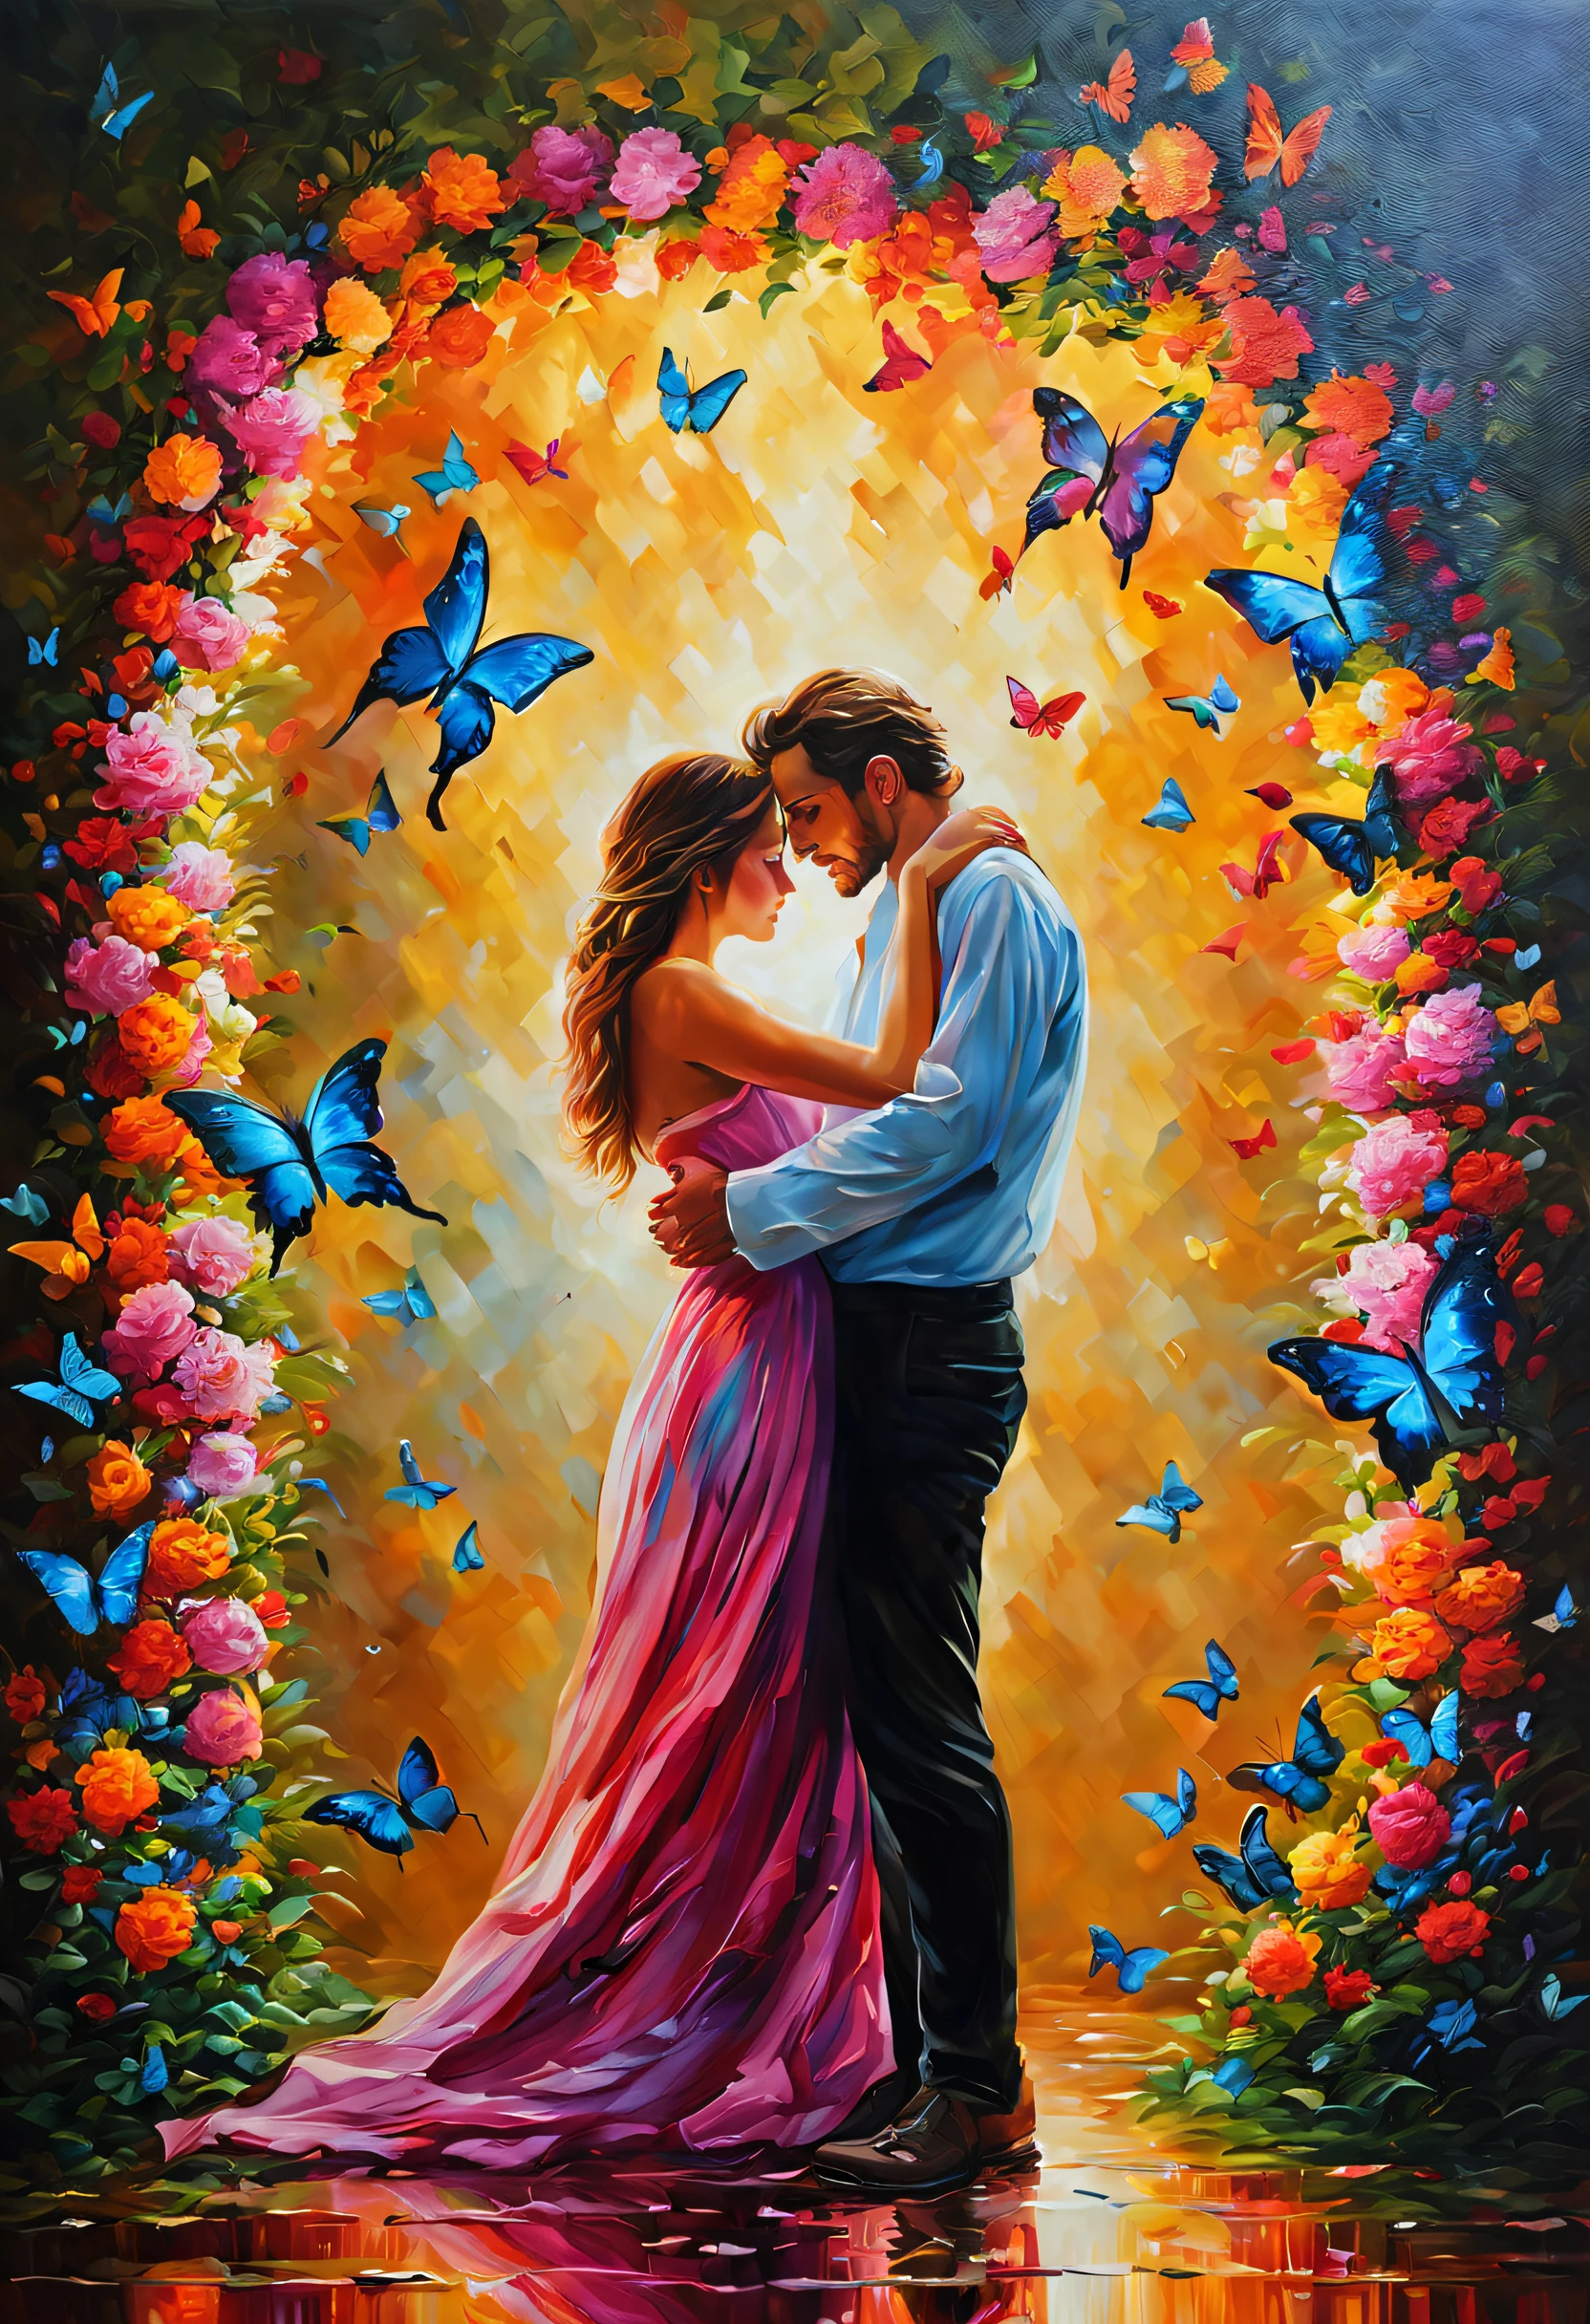 (melhor qualidade,4K,8K,alta resolução,obra de arte:1.2),(pintura a óleo),(amantes abraçando),(flores em flor),(borboletas coloridas),(cores vibrantes),(iluminação realista),(Composição única),(atmosfera romântica)